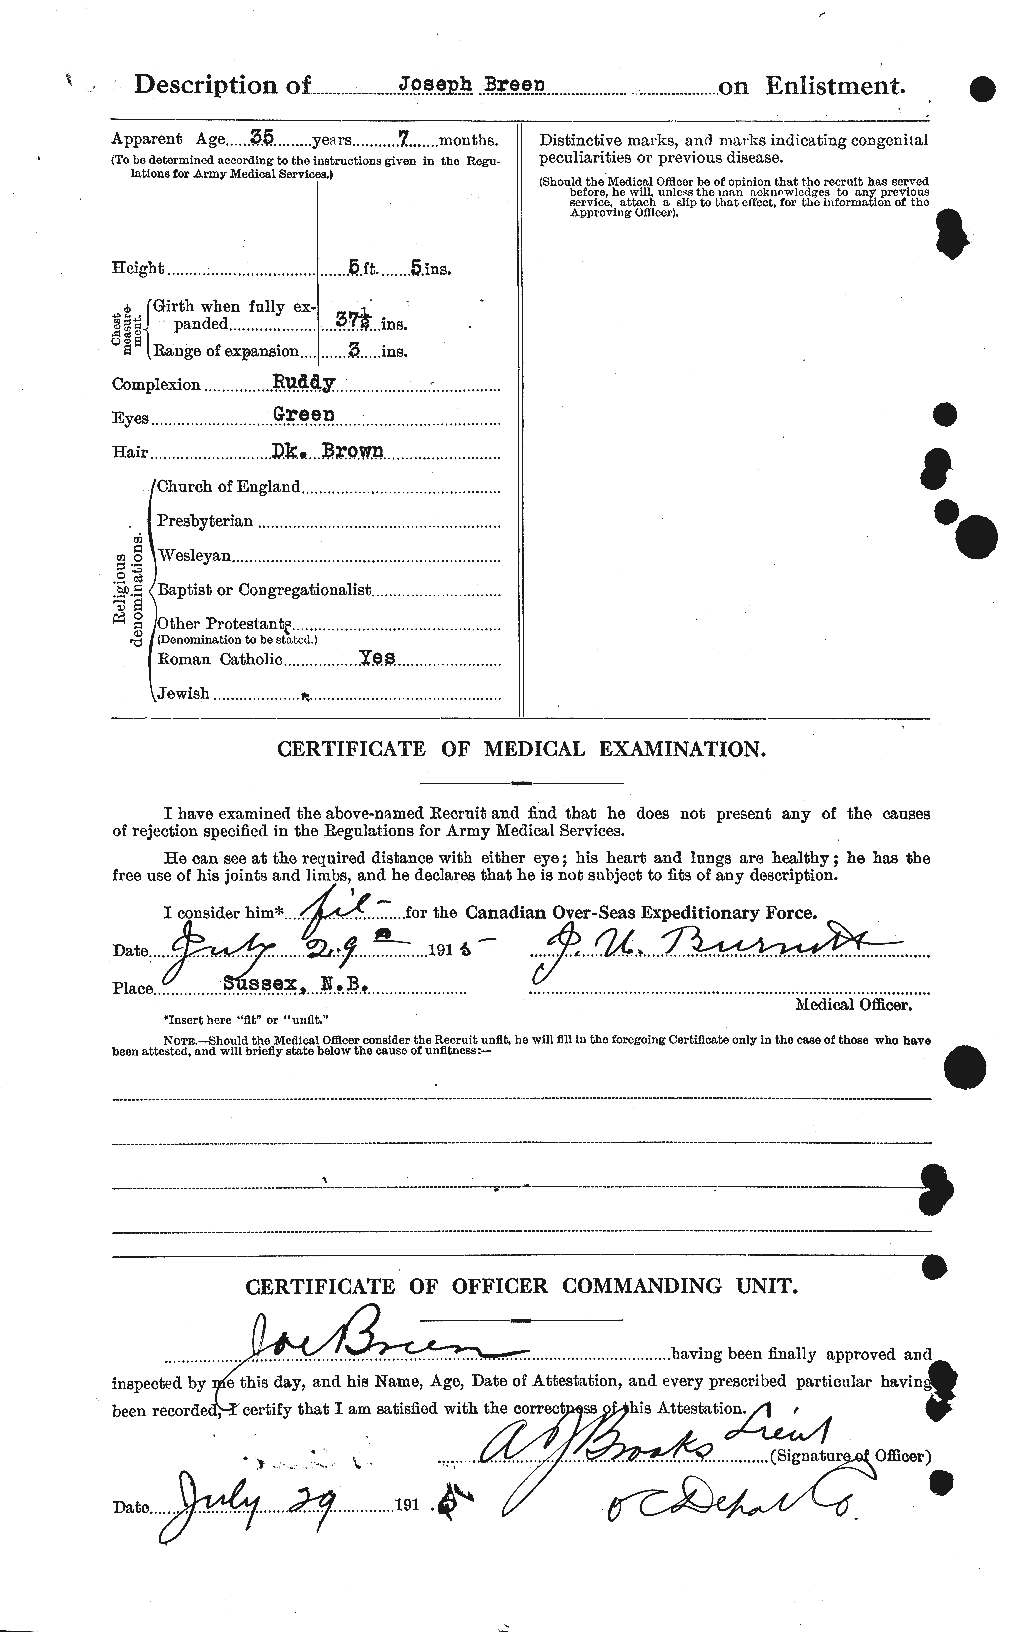 Dossiers du Personnel de la Première Guerre mondiale - CEC 263541b